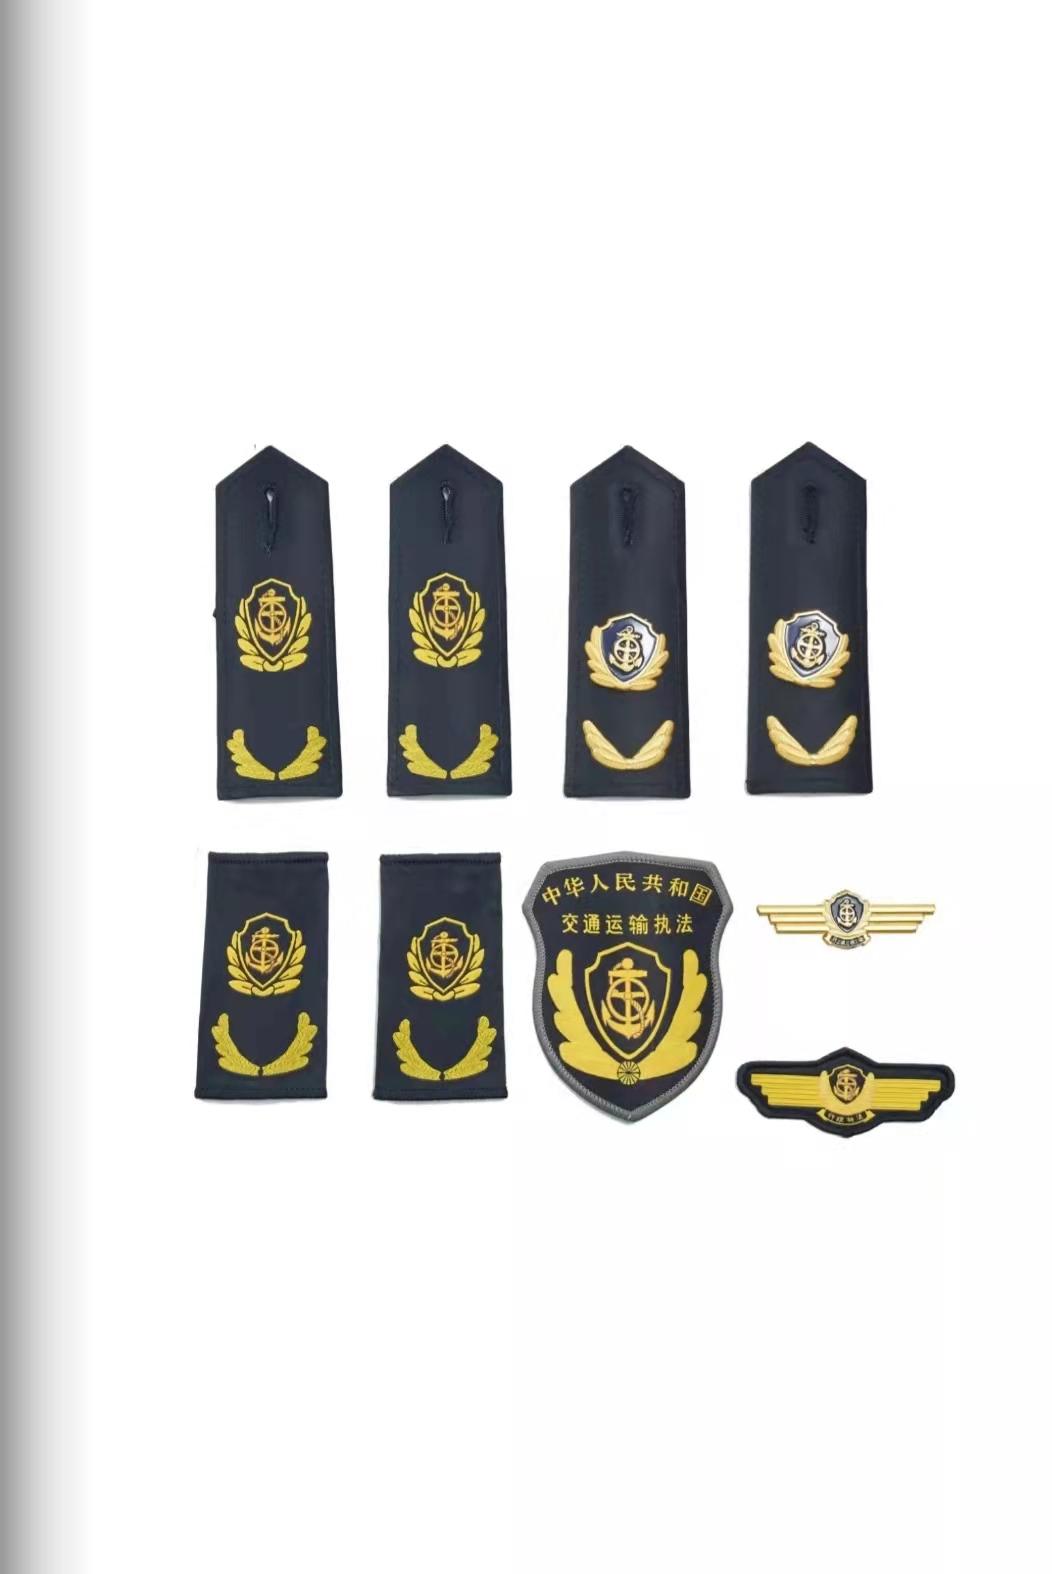 濮阳六部门统一交通运输执法服装标志